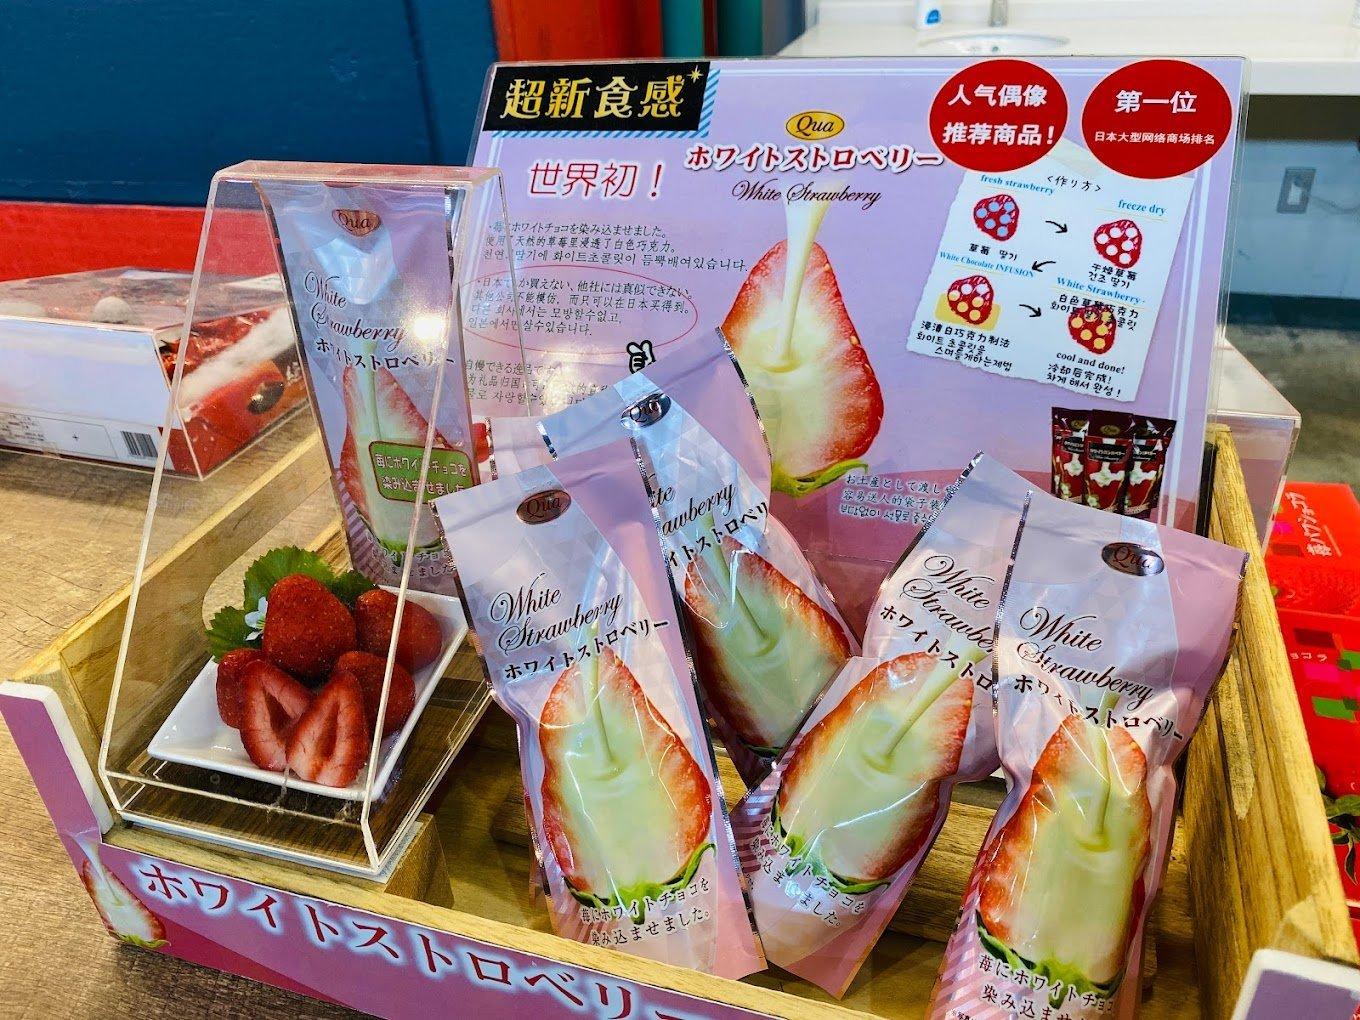 【章姫聖地】東京山梨富士果園採草莓60分鐘吃到飽體驗